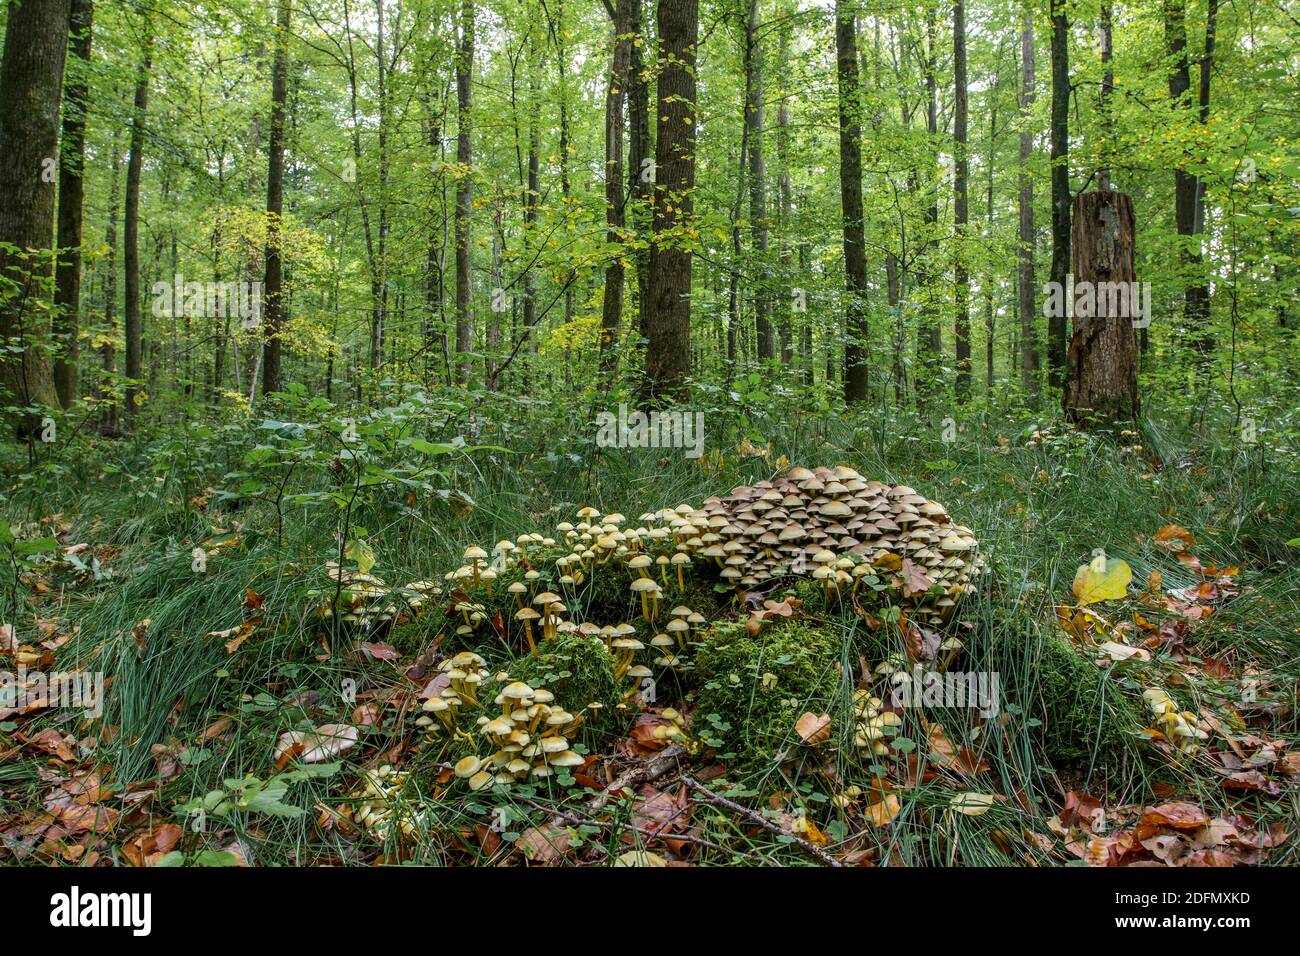 Pilze im Wald an morschem Baumstamm Stock Photo